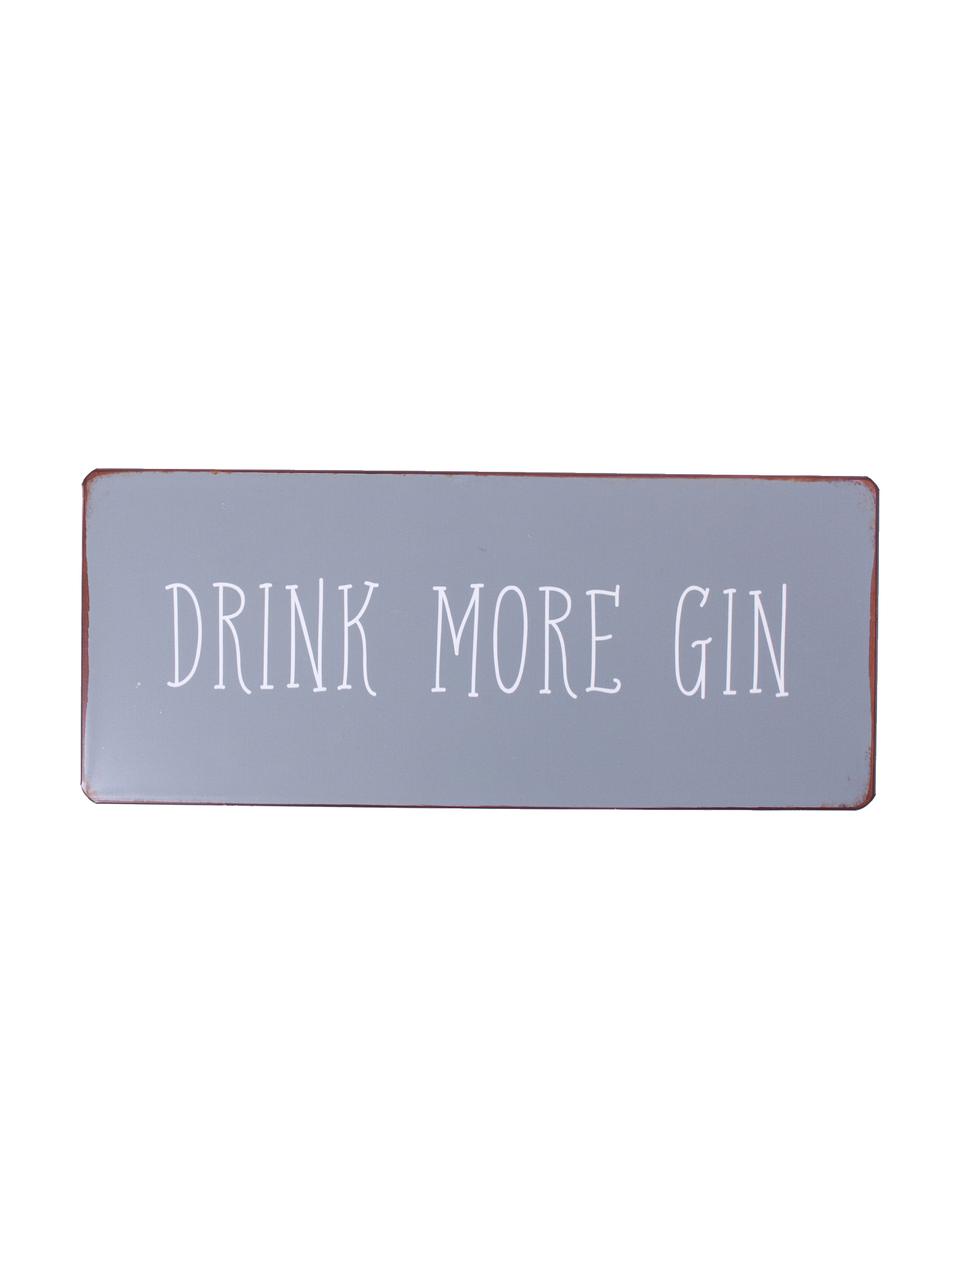 Wandschild Drink more gin, Metall, mit Motivfolie beklebt, Grau, Weiß, Rostfarben, 31 x 13 cm